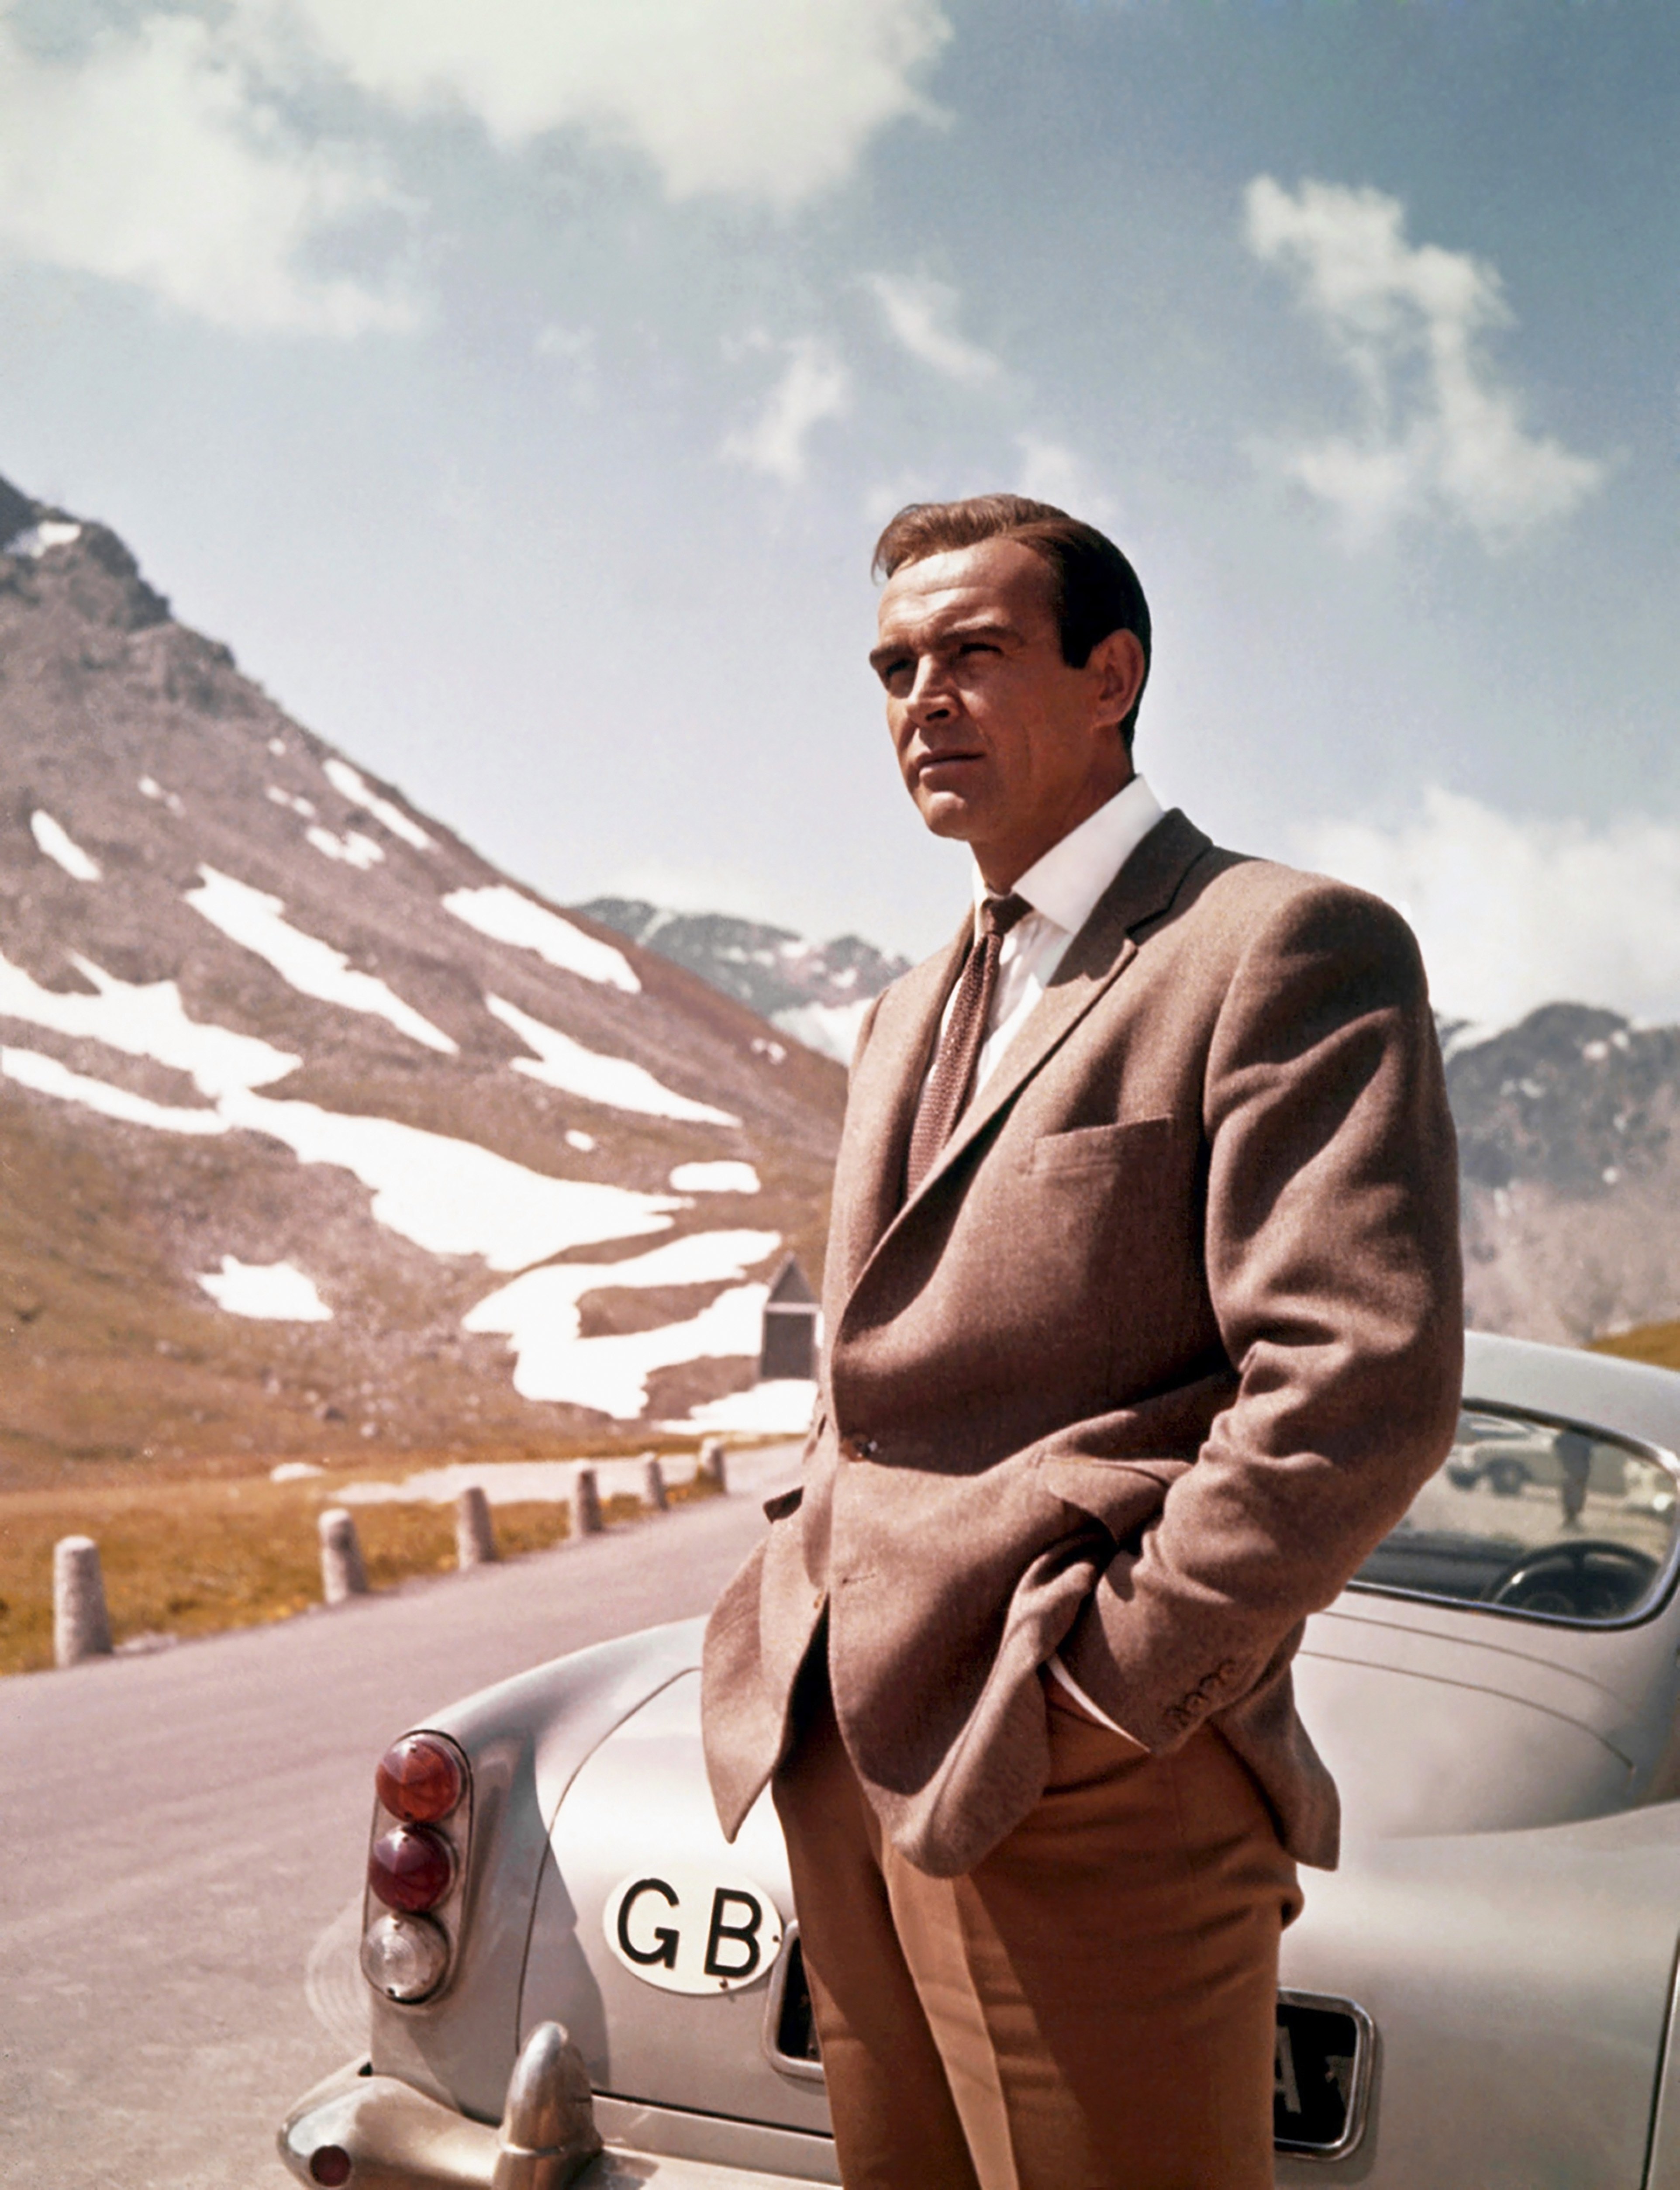 El actor Sean Connery en una escena de la película de United Artists "Goldfinger" en 1964. | Foto: Getty Images